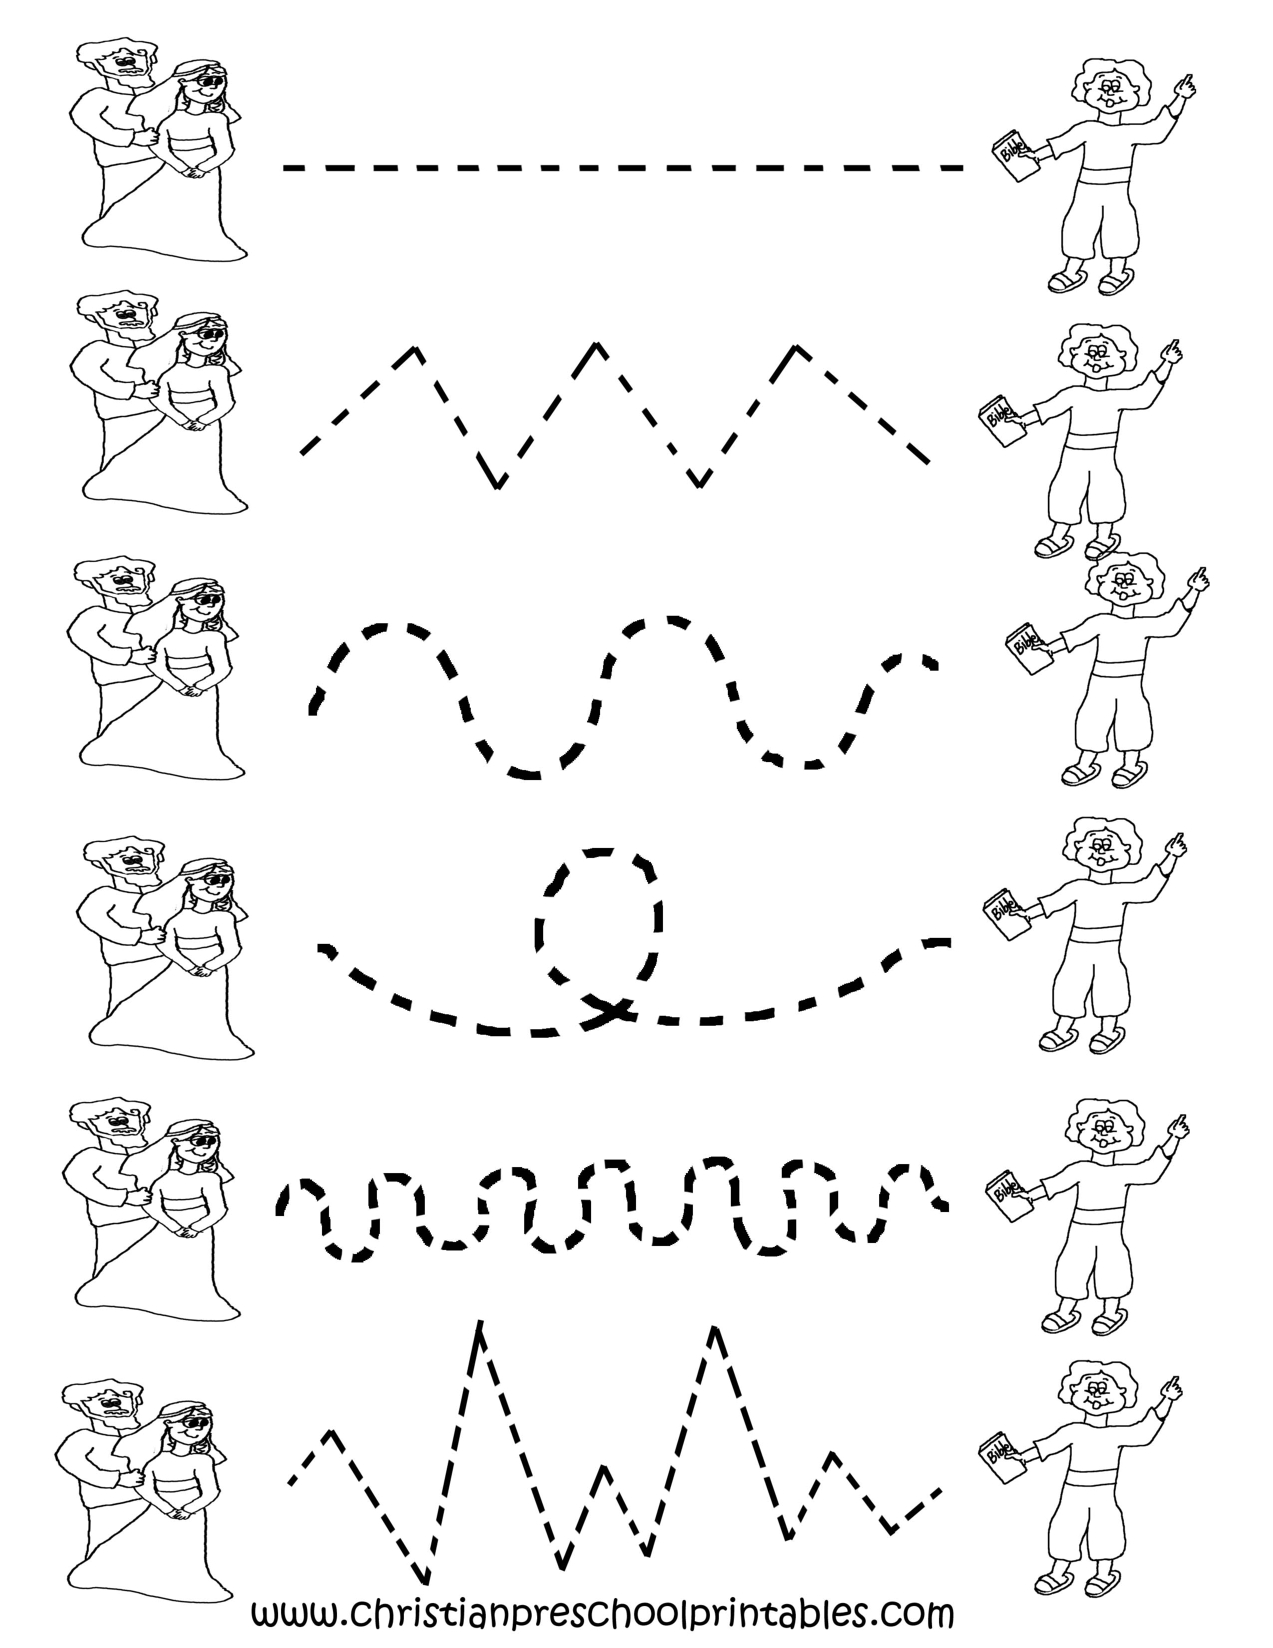 Free Printable Preschool Worksheets Tracing Lines Free